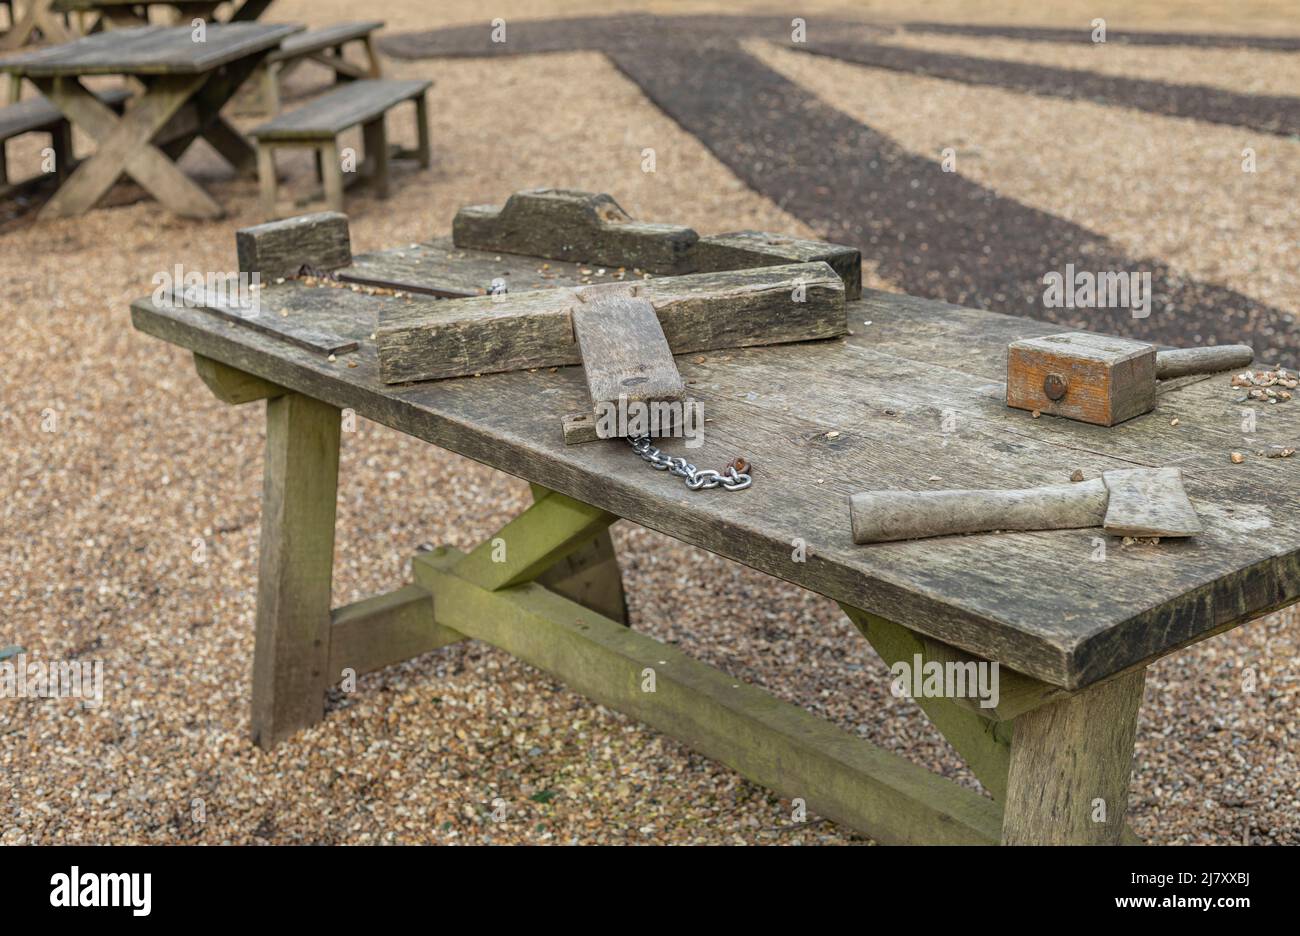 Tavolo in legno con attrezzi e attrezzi in legno intagliato sul piano del tavolo Foto Stock